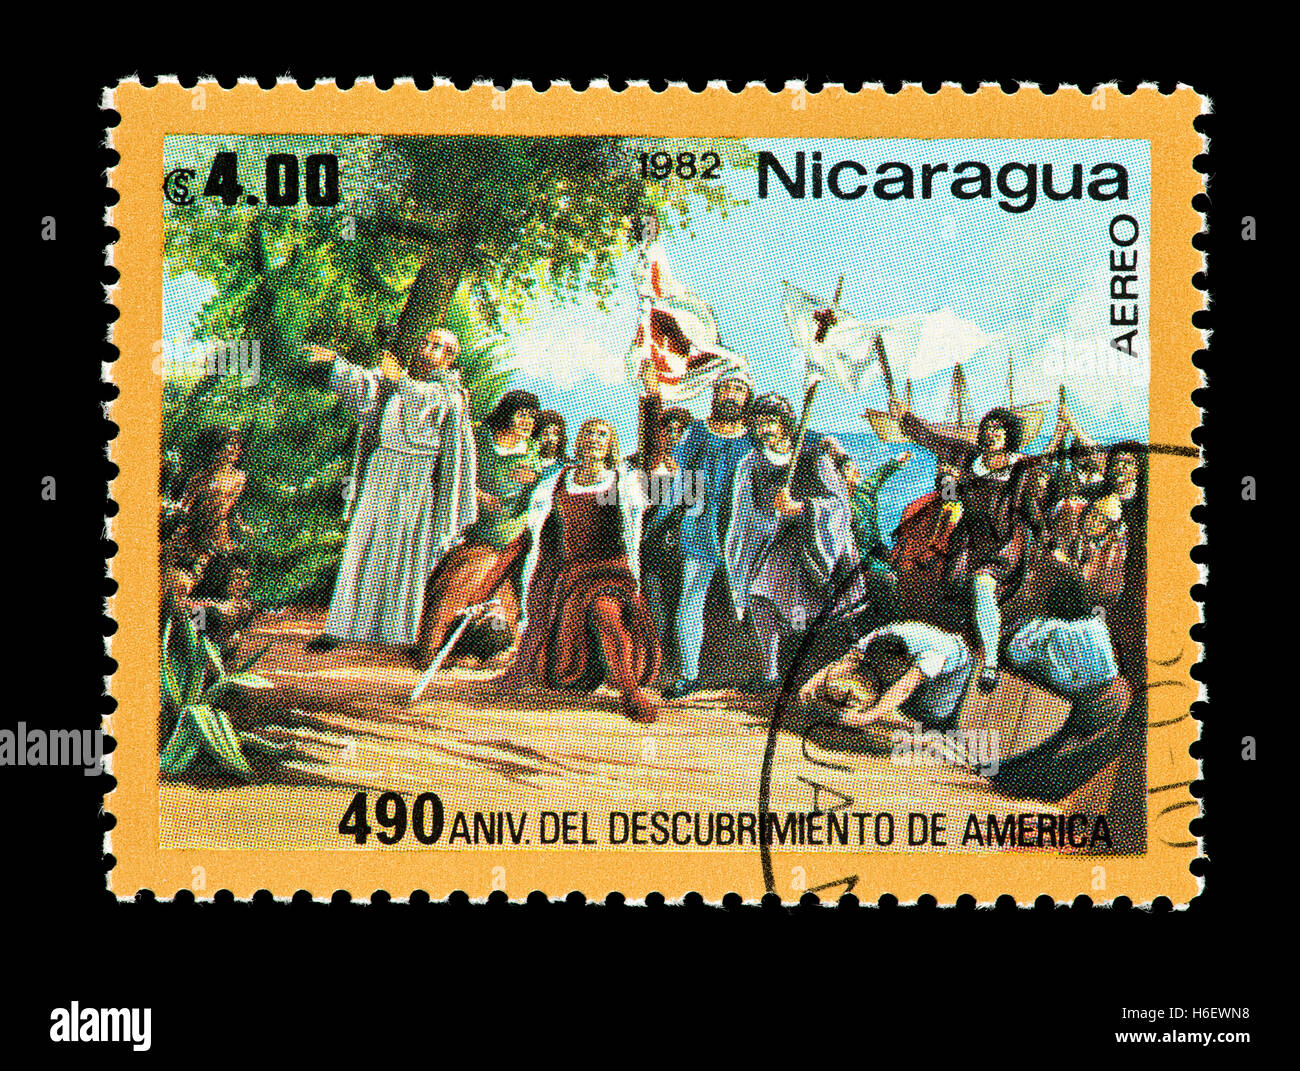 Briefmarke aus Nicaragua, die Darstellung der Landung von Kolumbus in der Karibik. Stockfoto